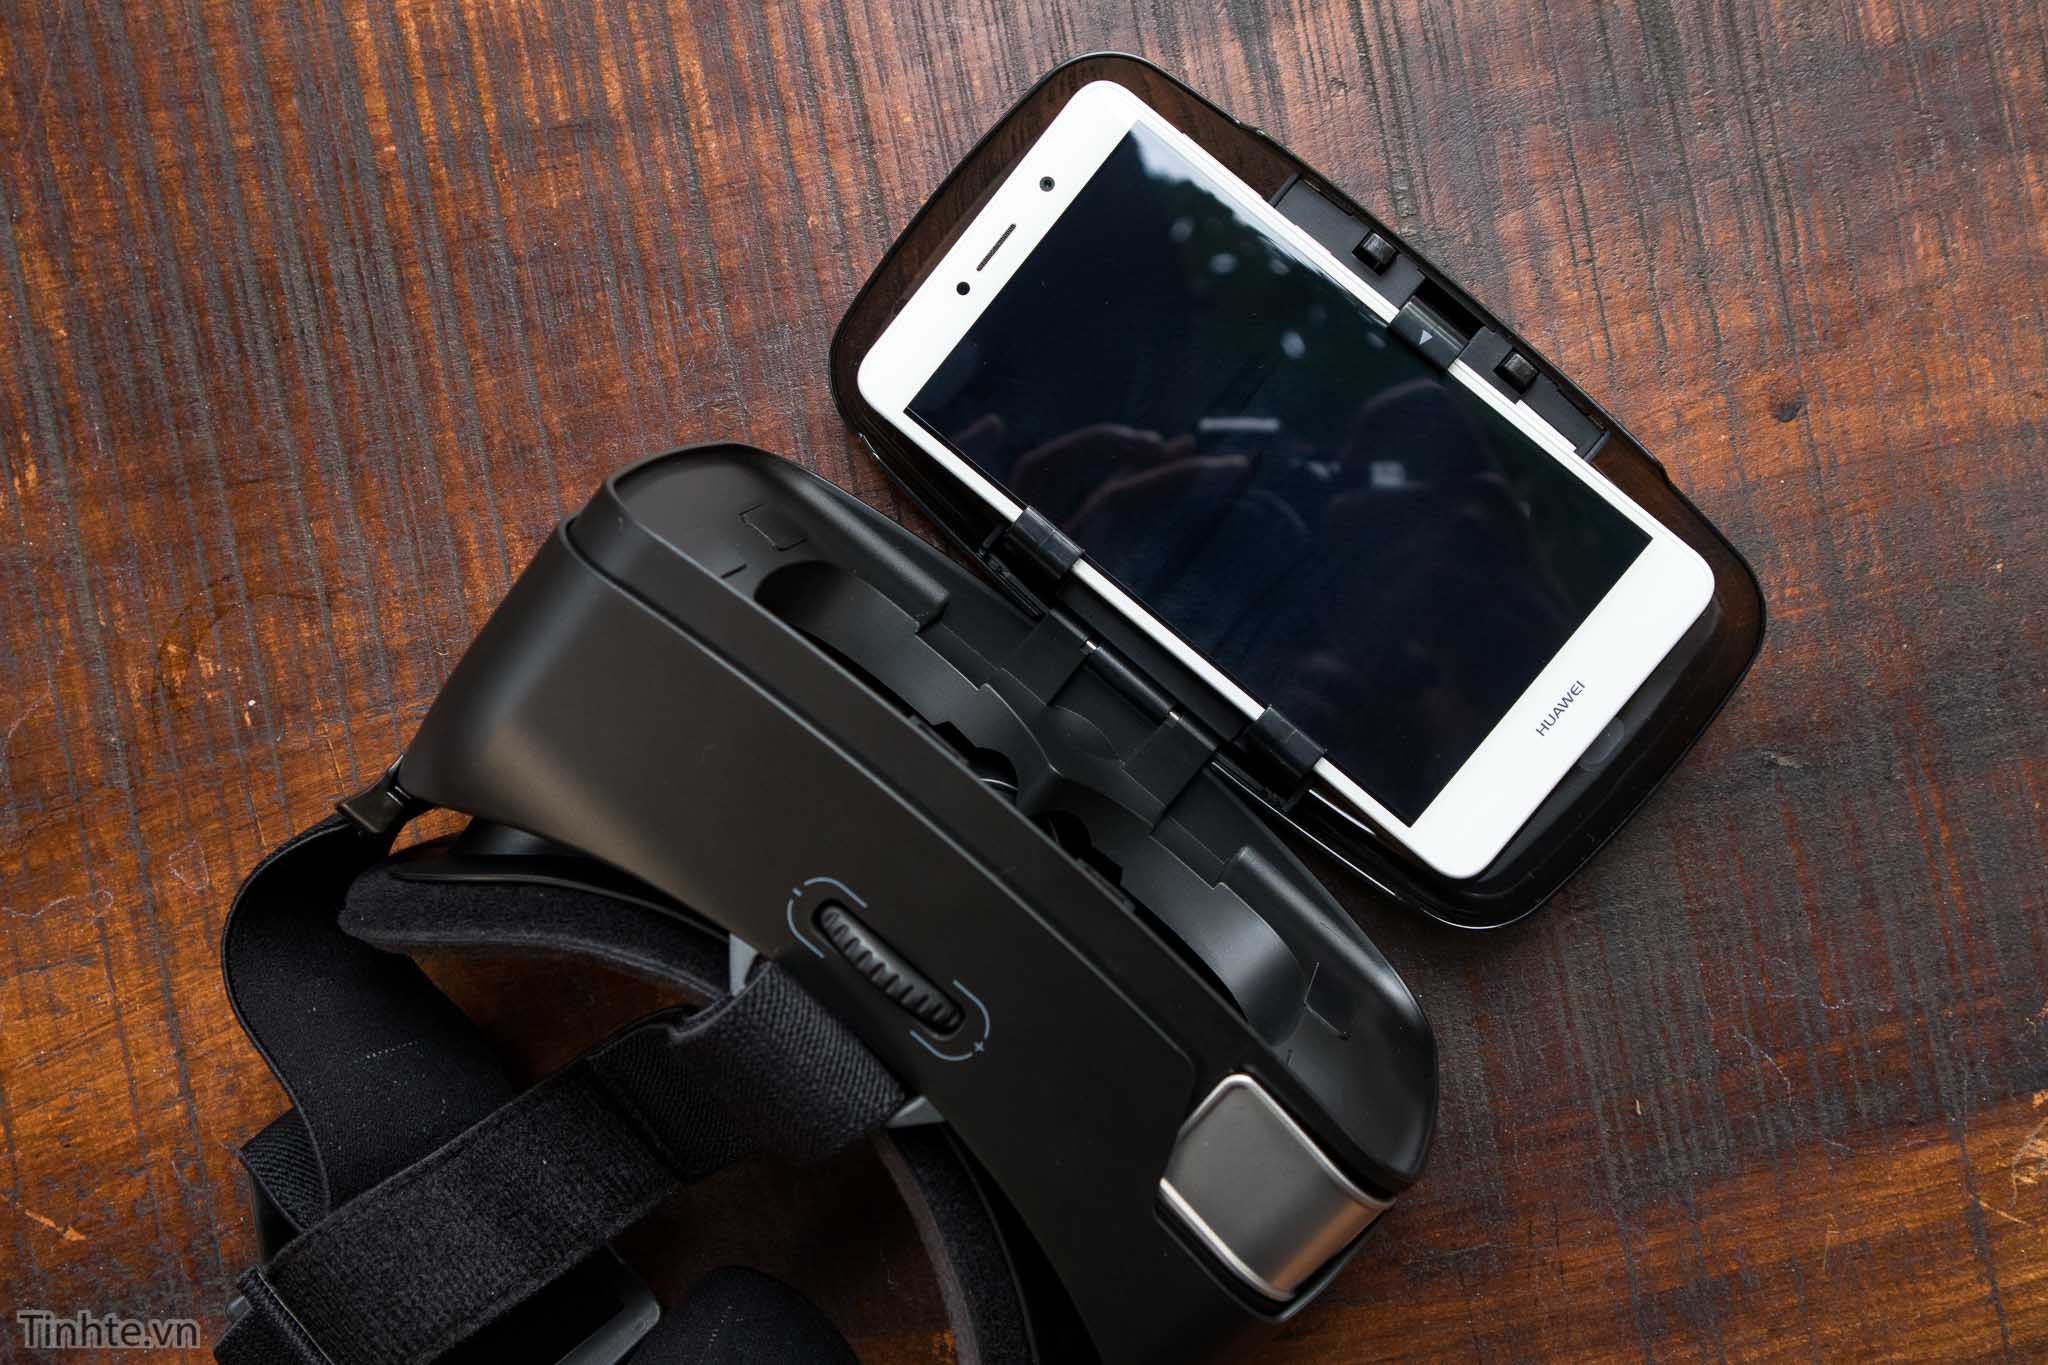 Tren tay Homido V2 VR headset - Tinhte.vn-7.jpg